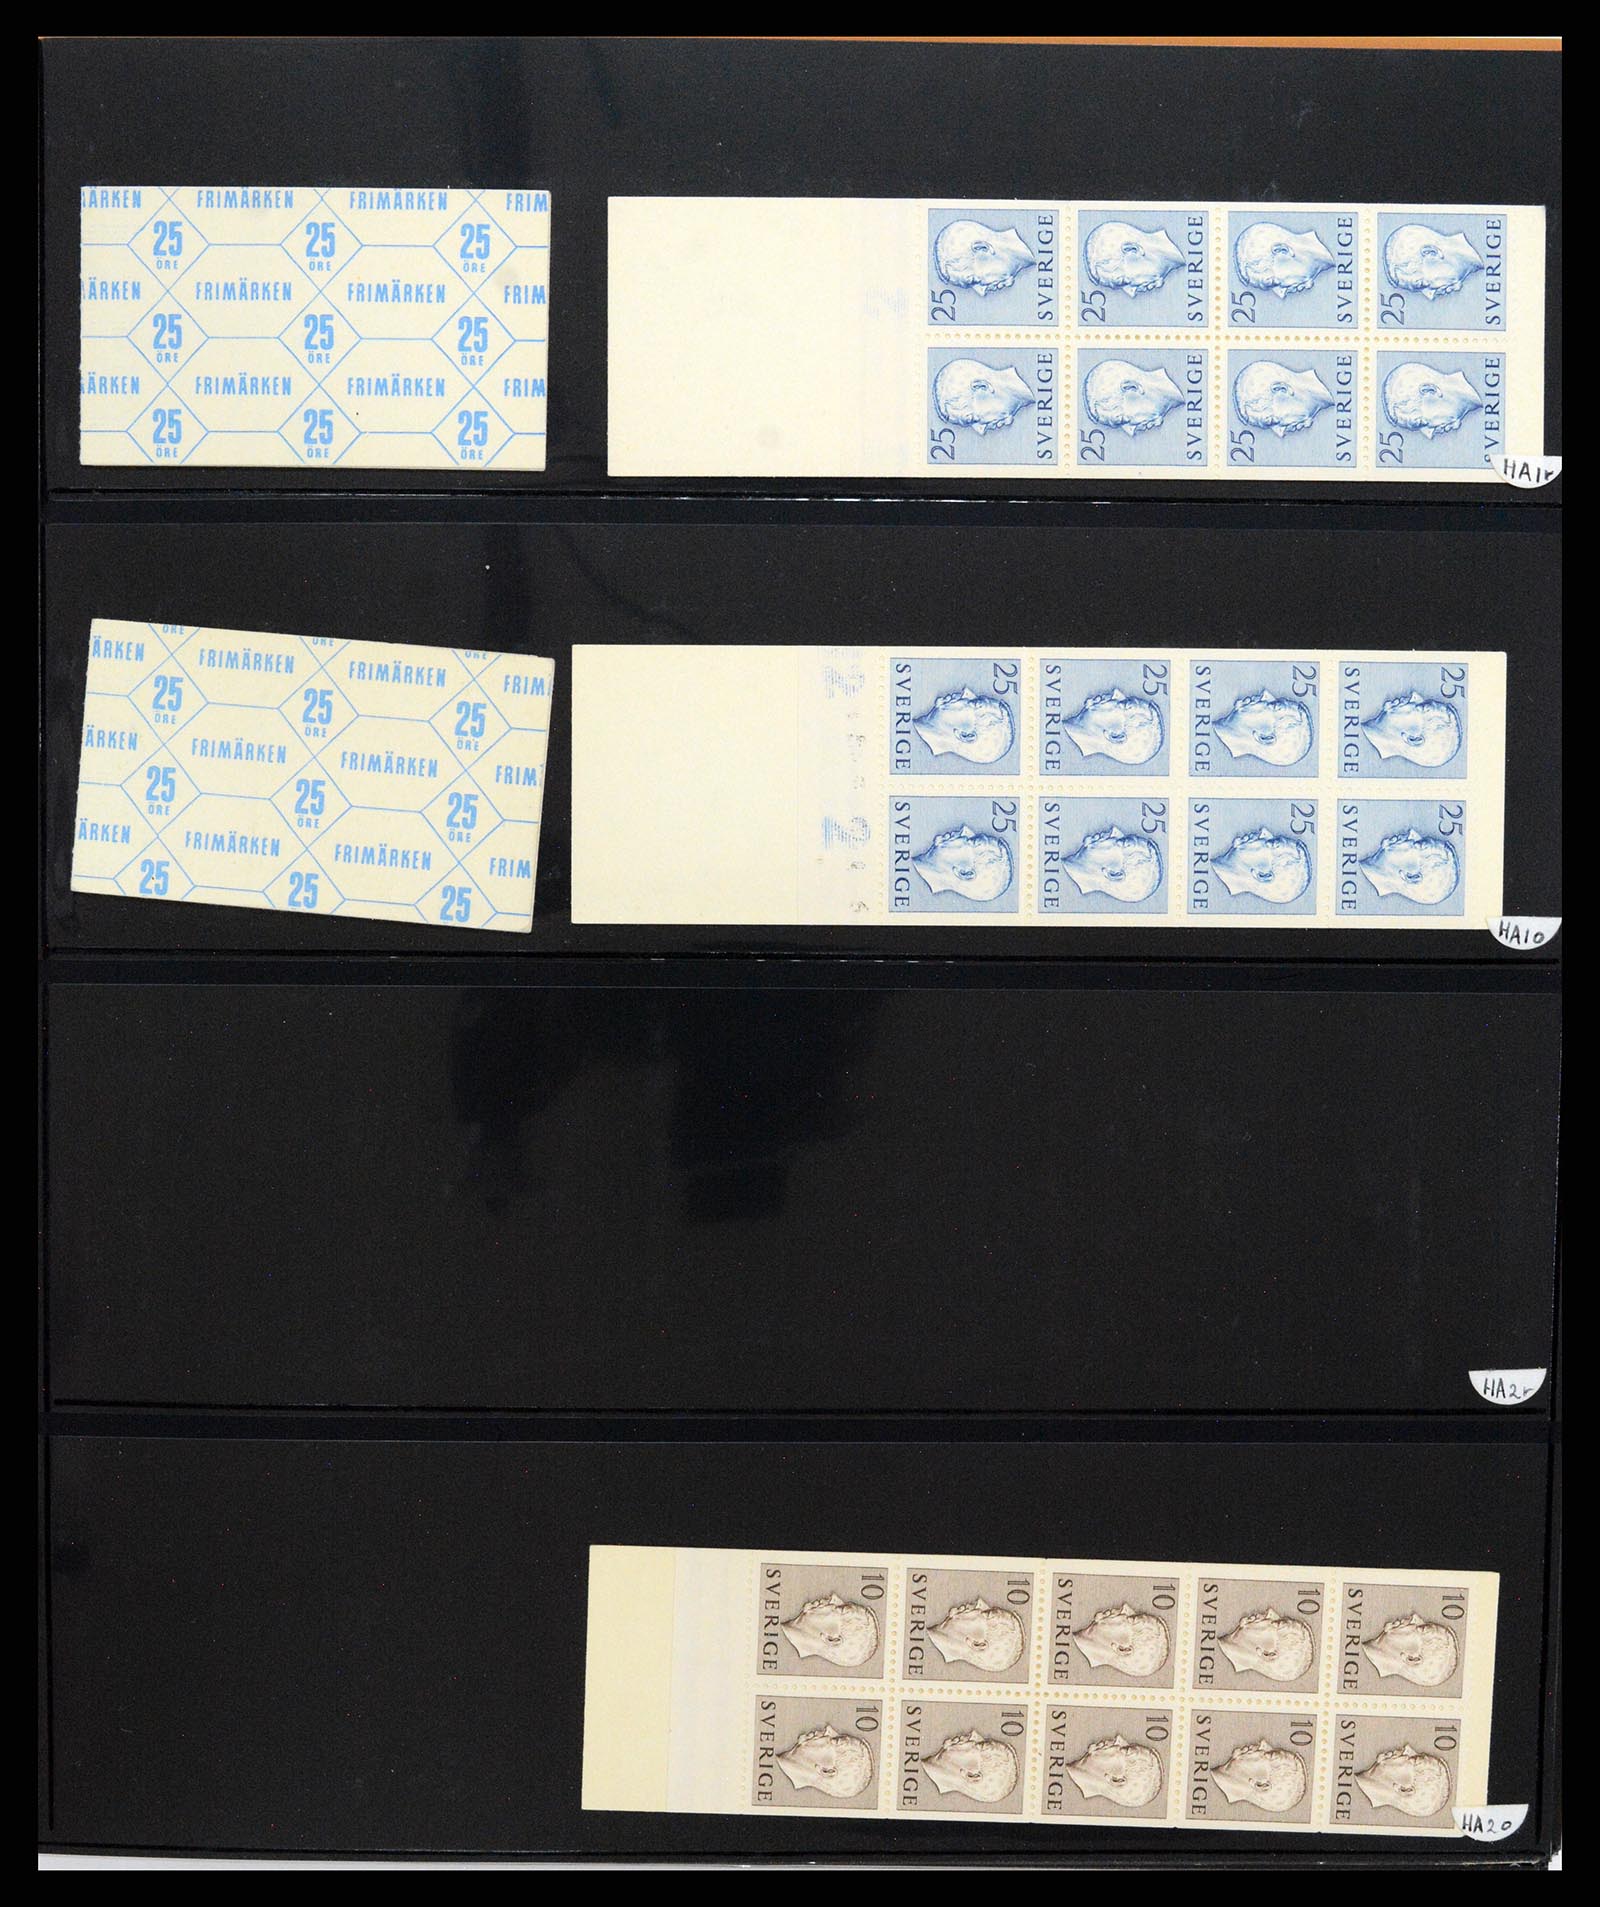 37345 055 - Stamp collection 37345 European countries souvenir sheets.